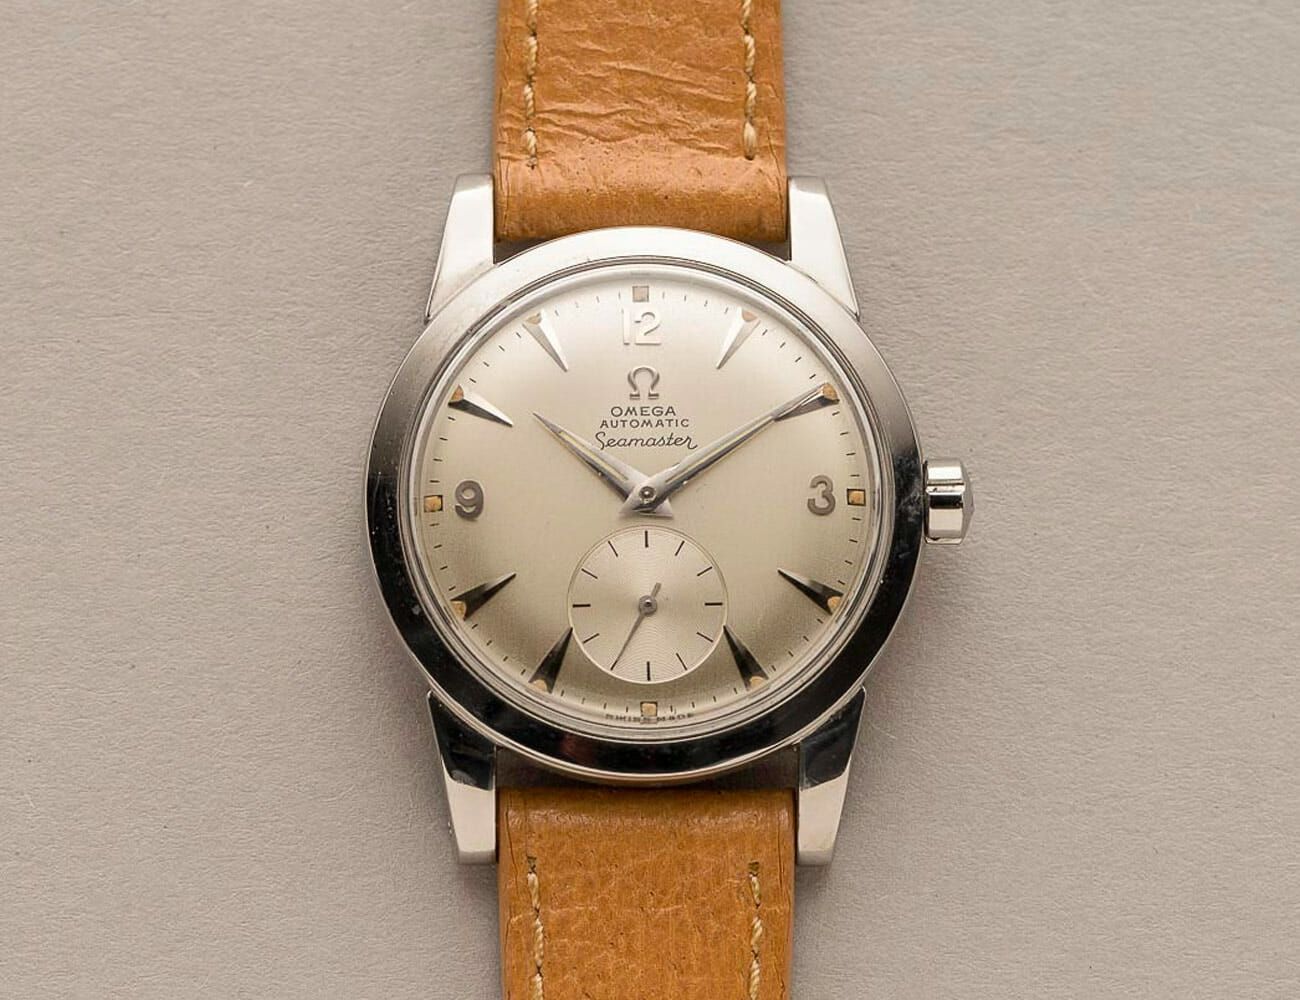 omega vintage watch